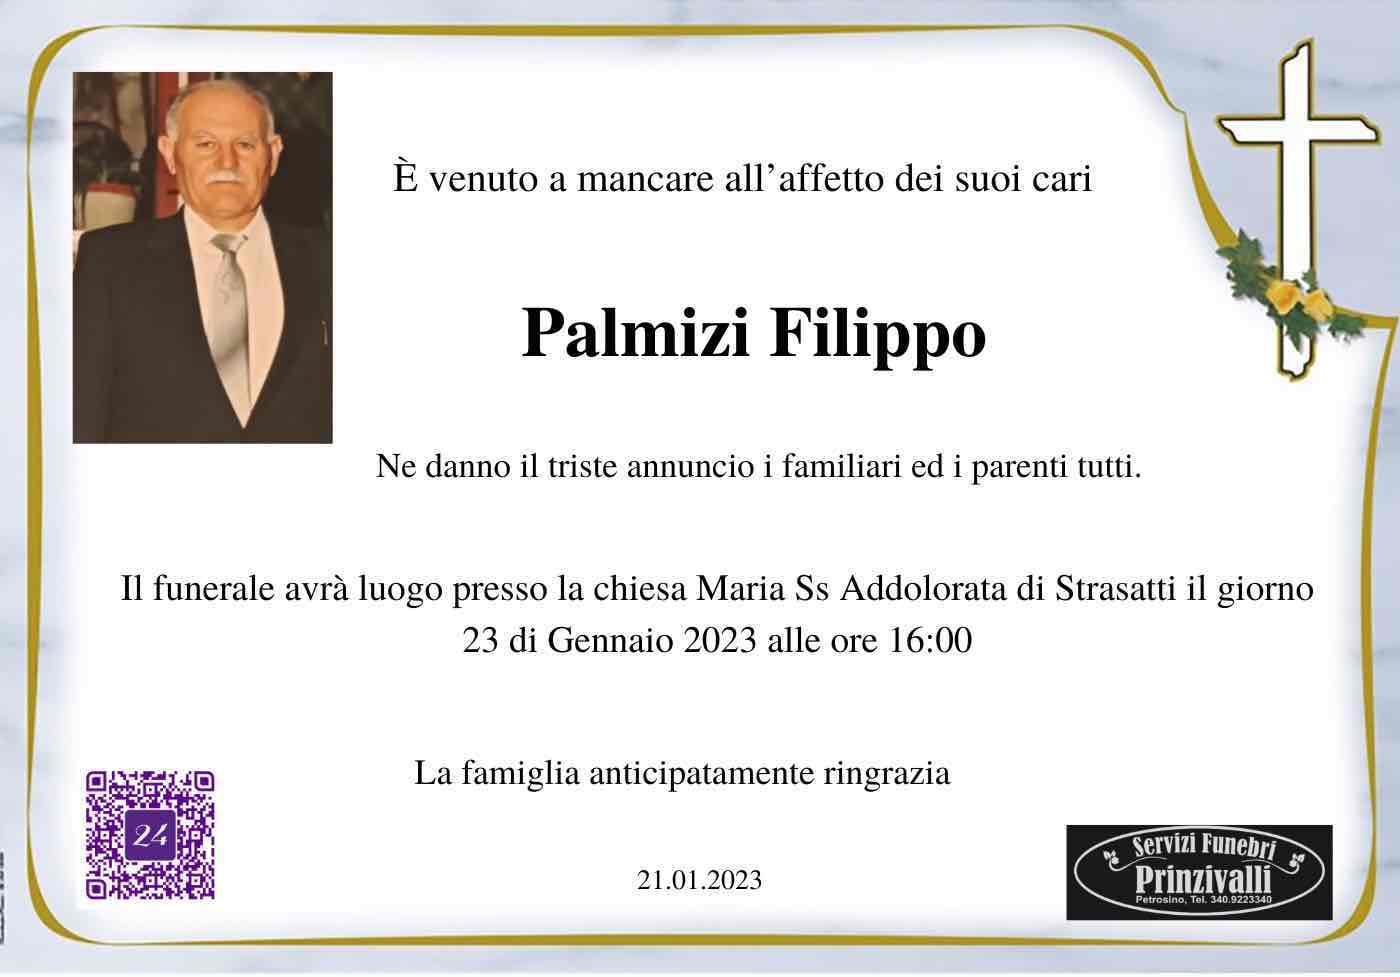 Filippo Palmizi